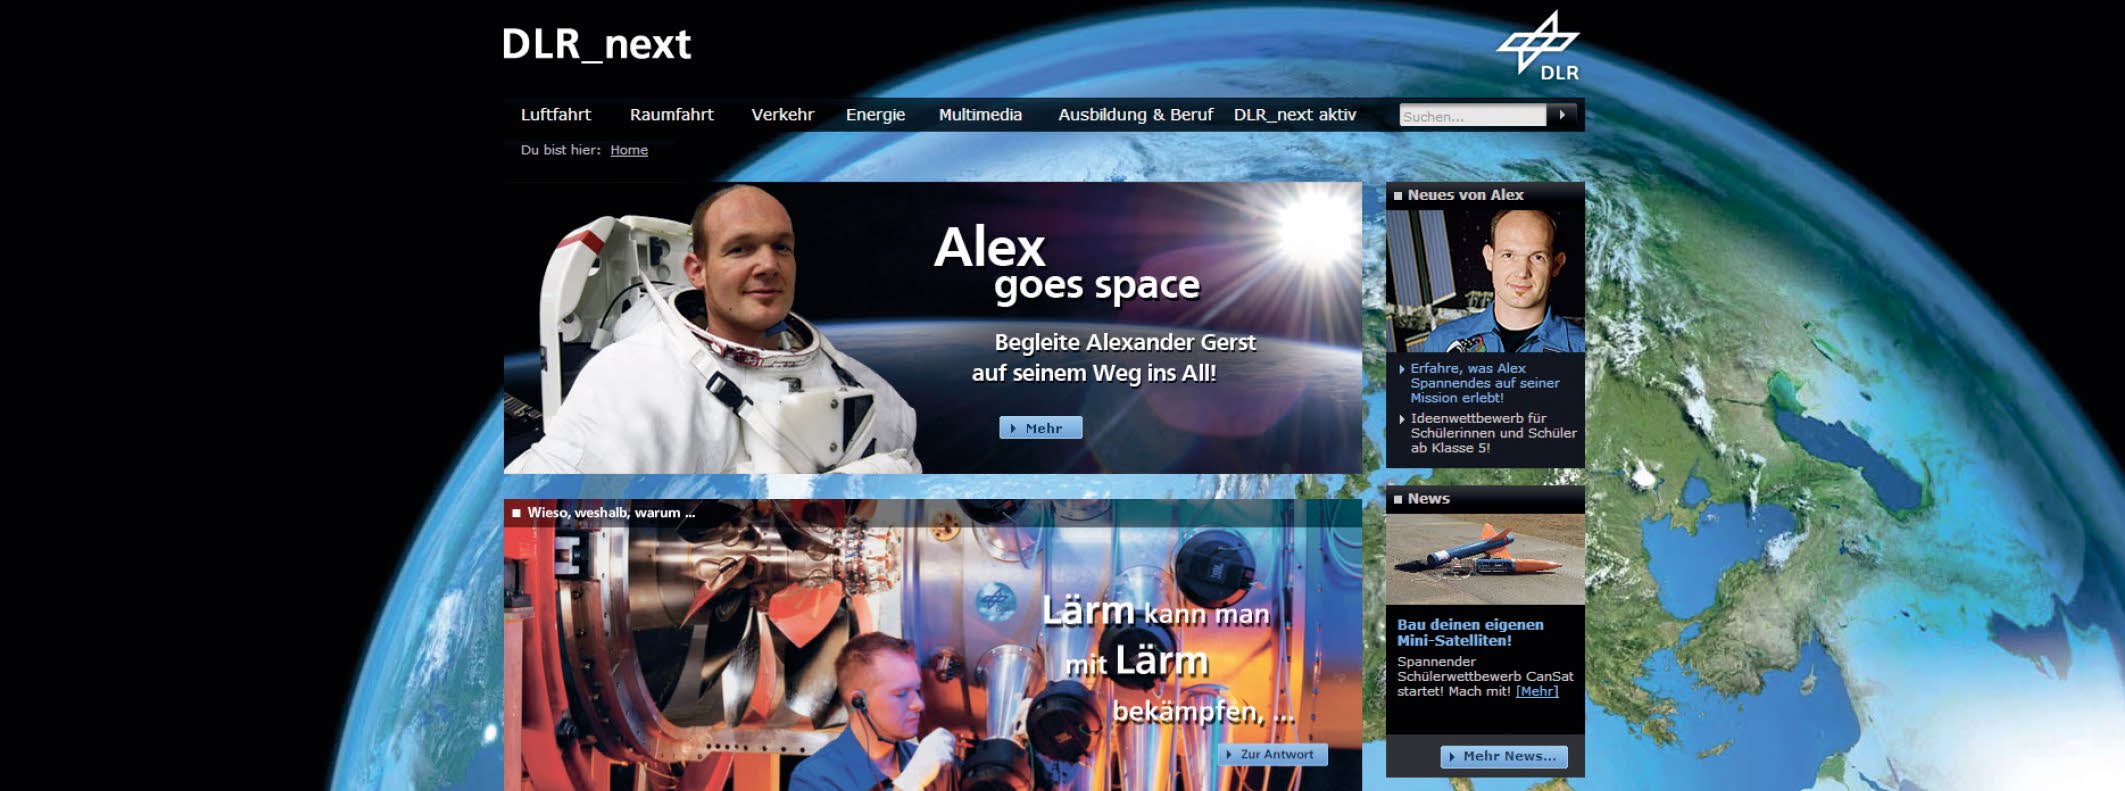 Alex goes space sei live dabei! Die Mission von Alexander Gerst kannst du auf ganz verschiedene Weise verfolgen. Hier einige Tipps: Was Alex auf der ISS erlebt, darüber informiert DLR_next siehe www.